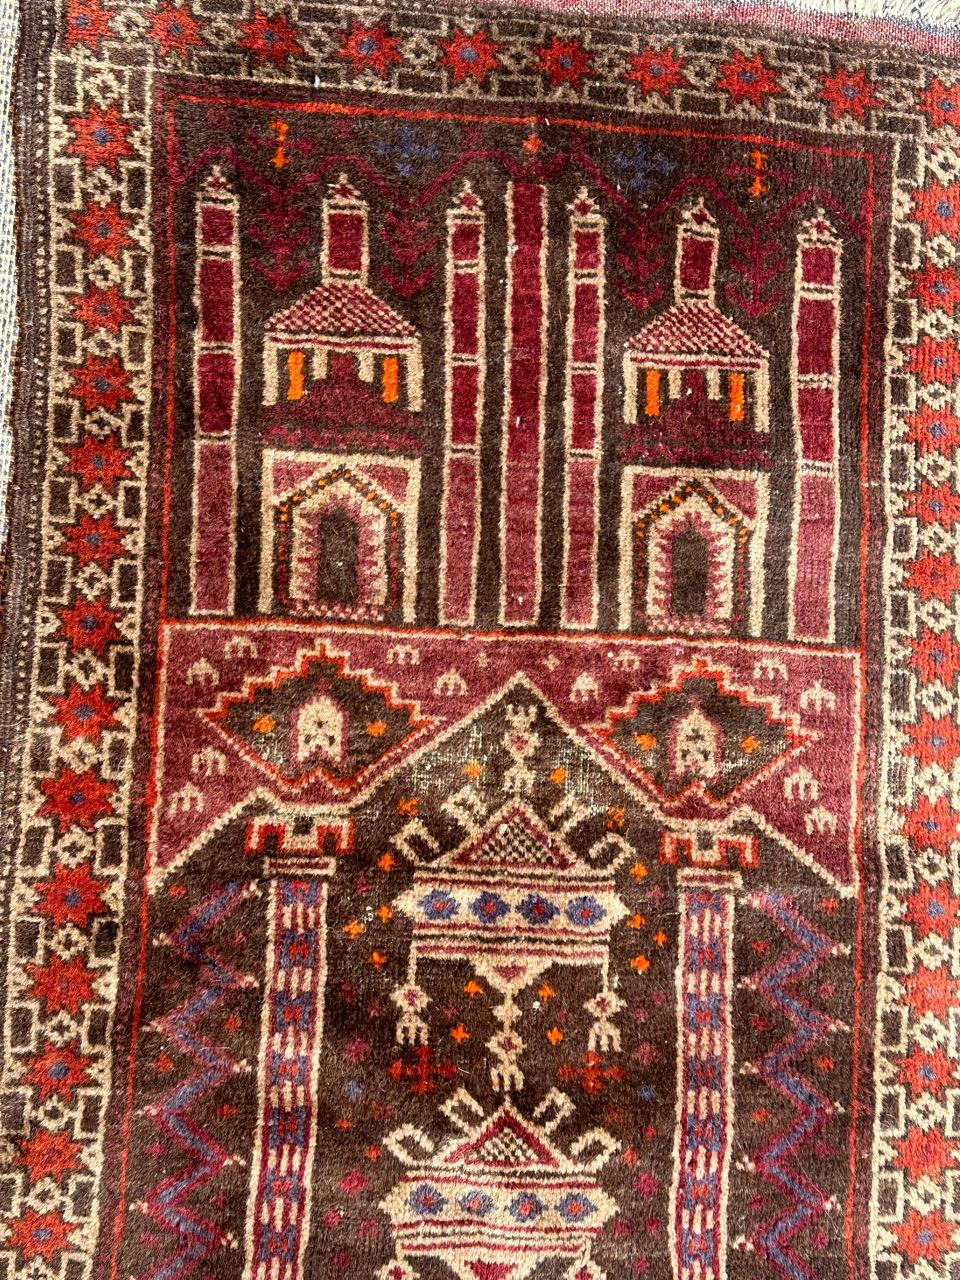 Joli tapis vintage turkmène Baluch avec de jolis motifs picturaux et géométriques représentant des bâtiments et des colonnes, et de jolies couleurs, entièrement noué à la main avec de la laine sur un support en laine. 

✨✨✨
